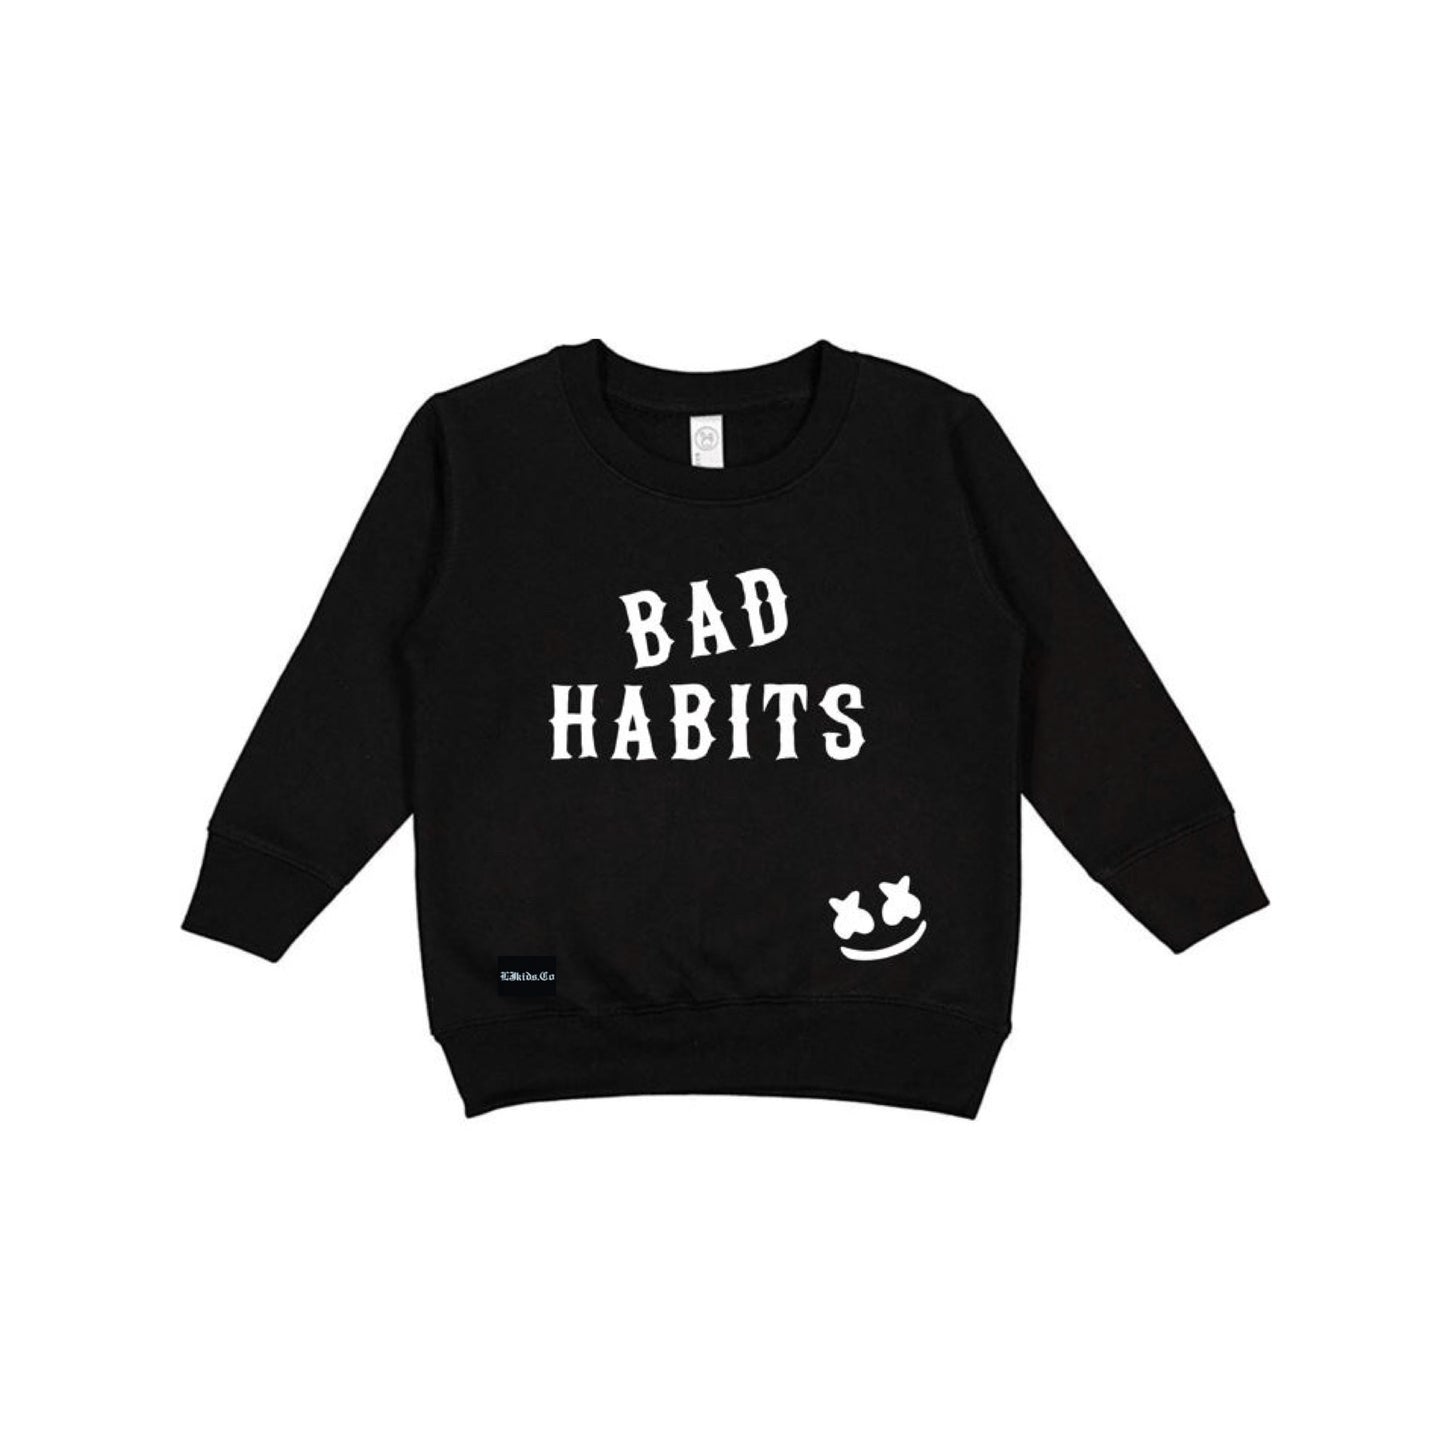 Bad Habits Sweatshirt